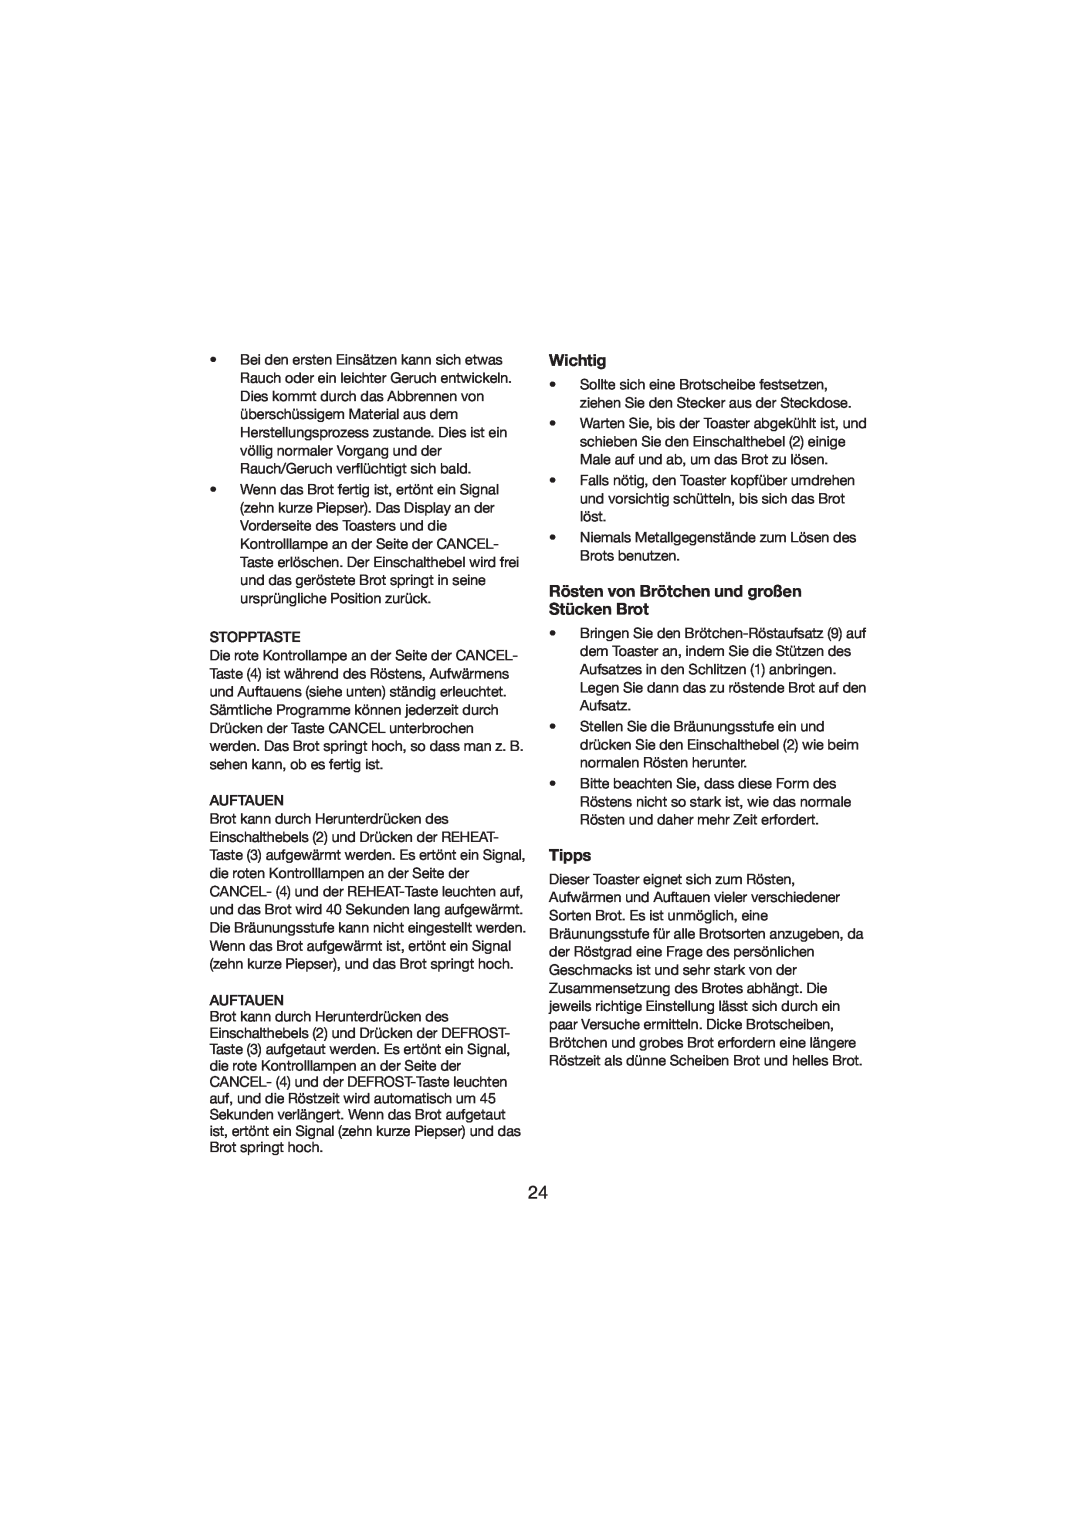 Melissa 243-015 manual Wichtig, Rösten von Brötchen und großen Stücken Brot, Tipps 